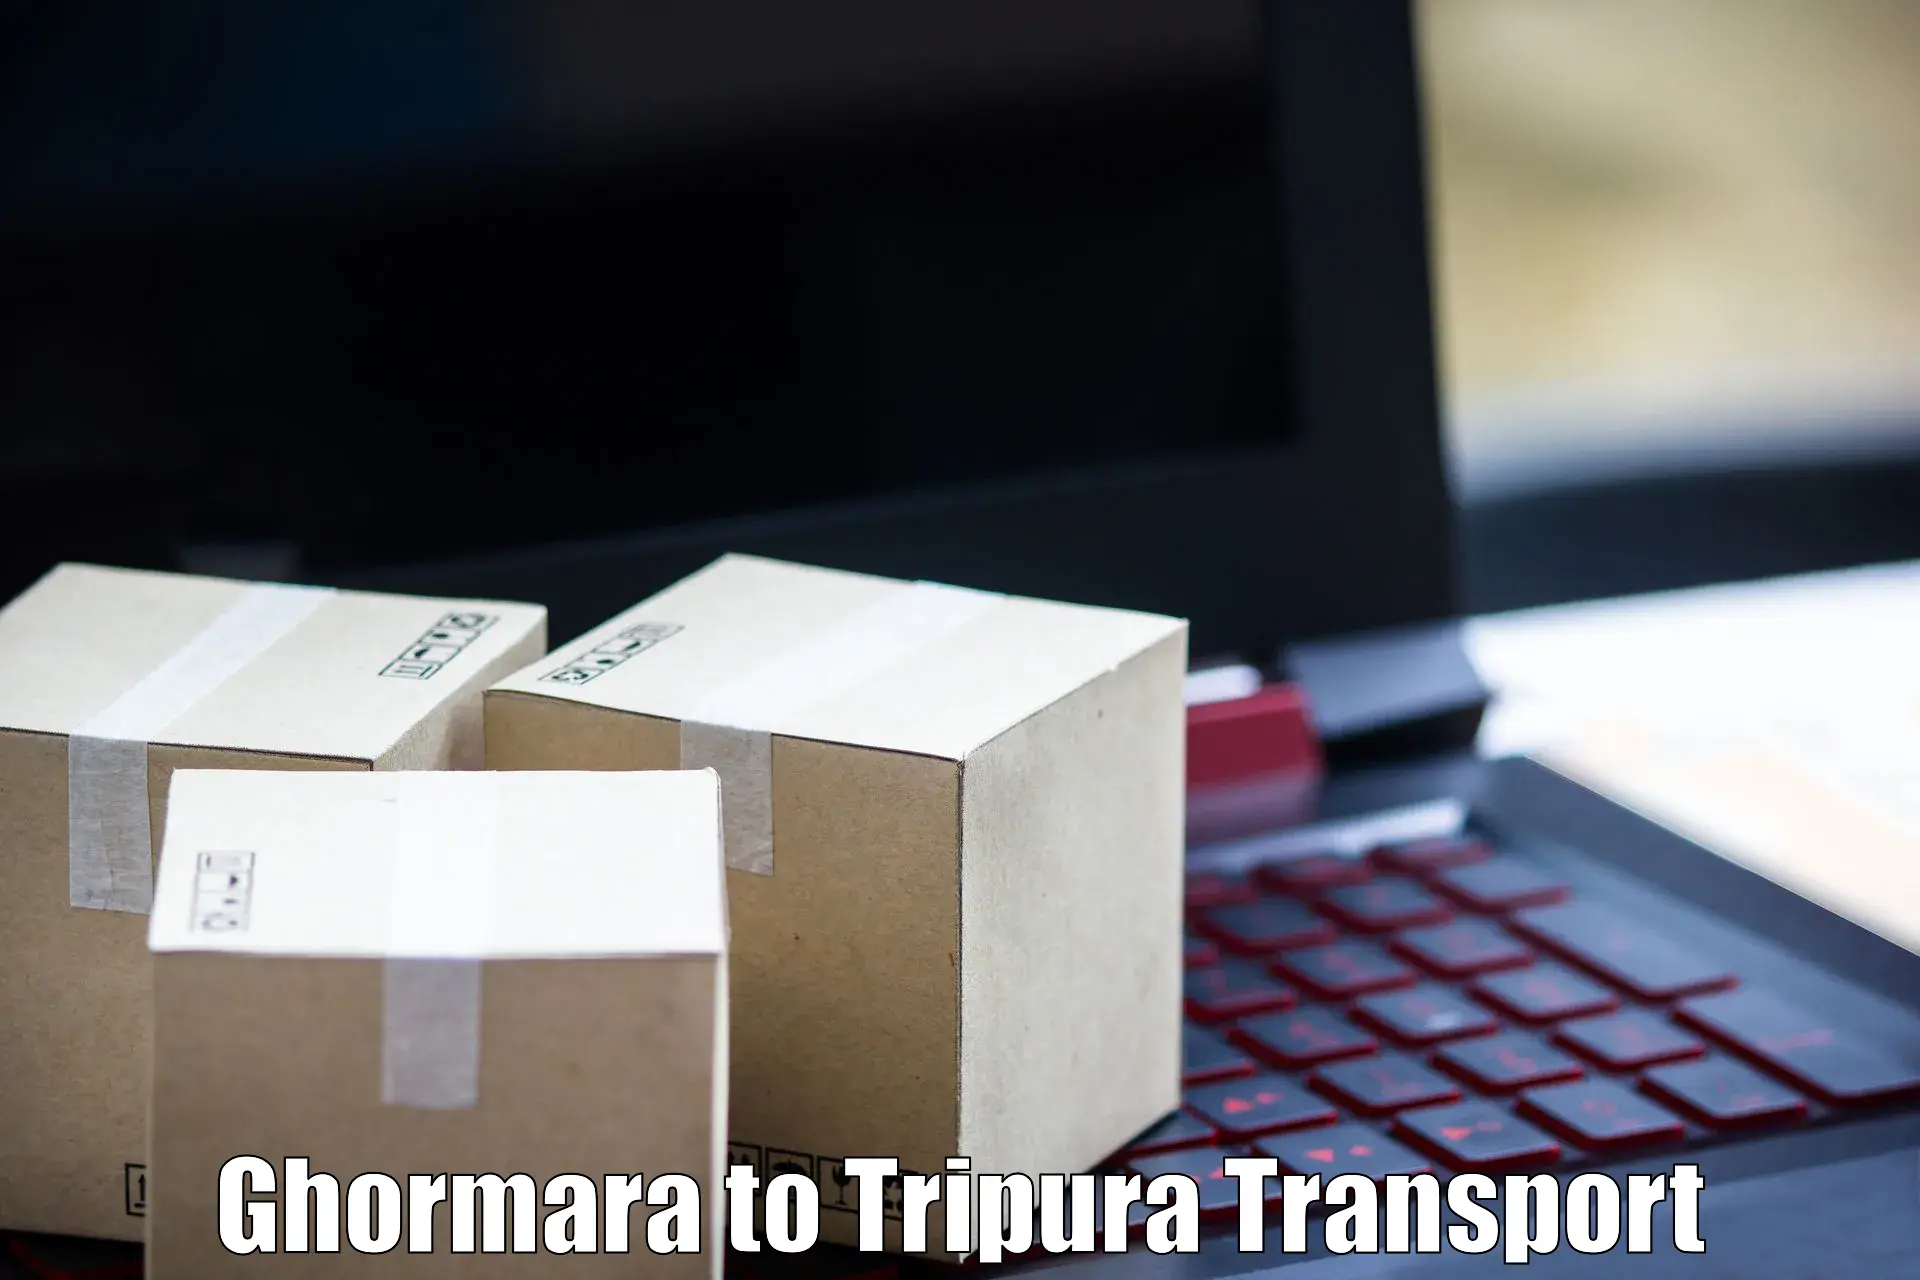 Interstate transport services Ghormara to Ambassa